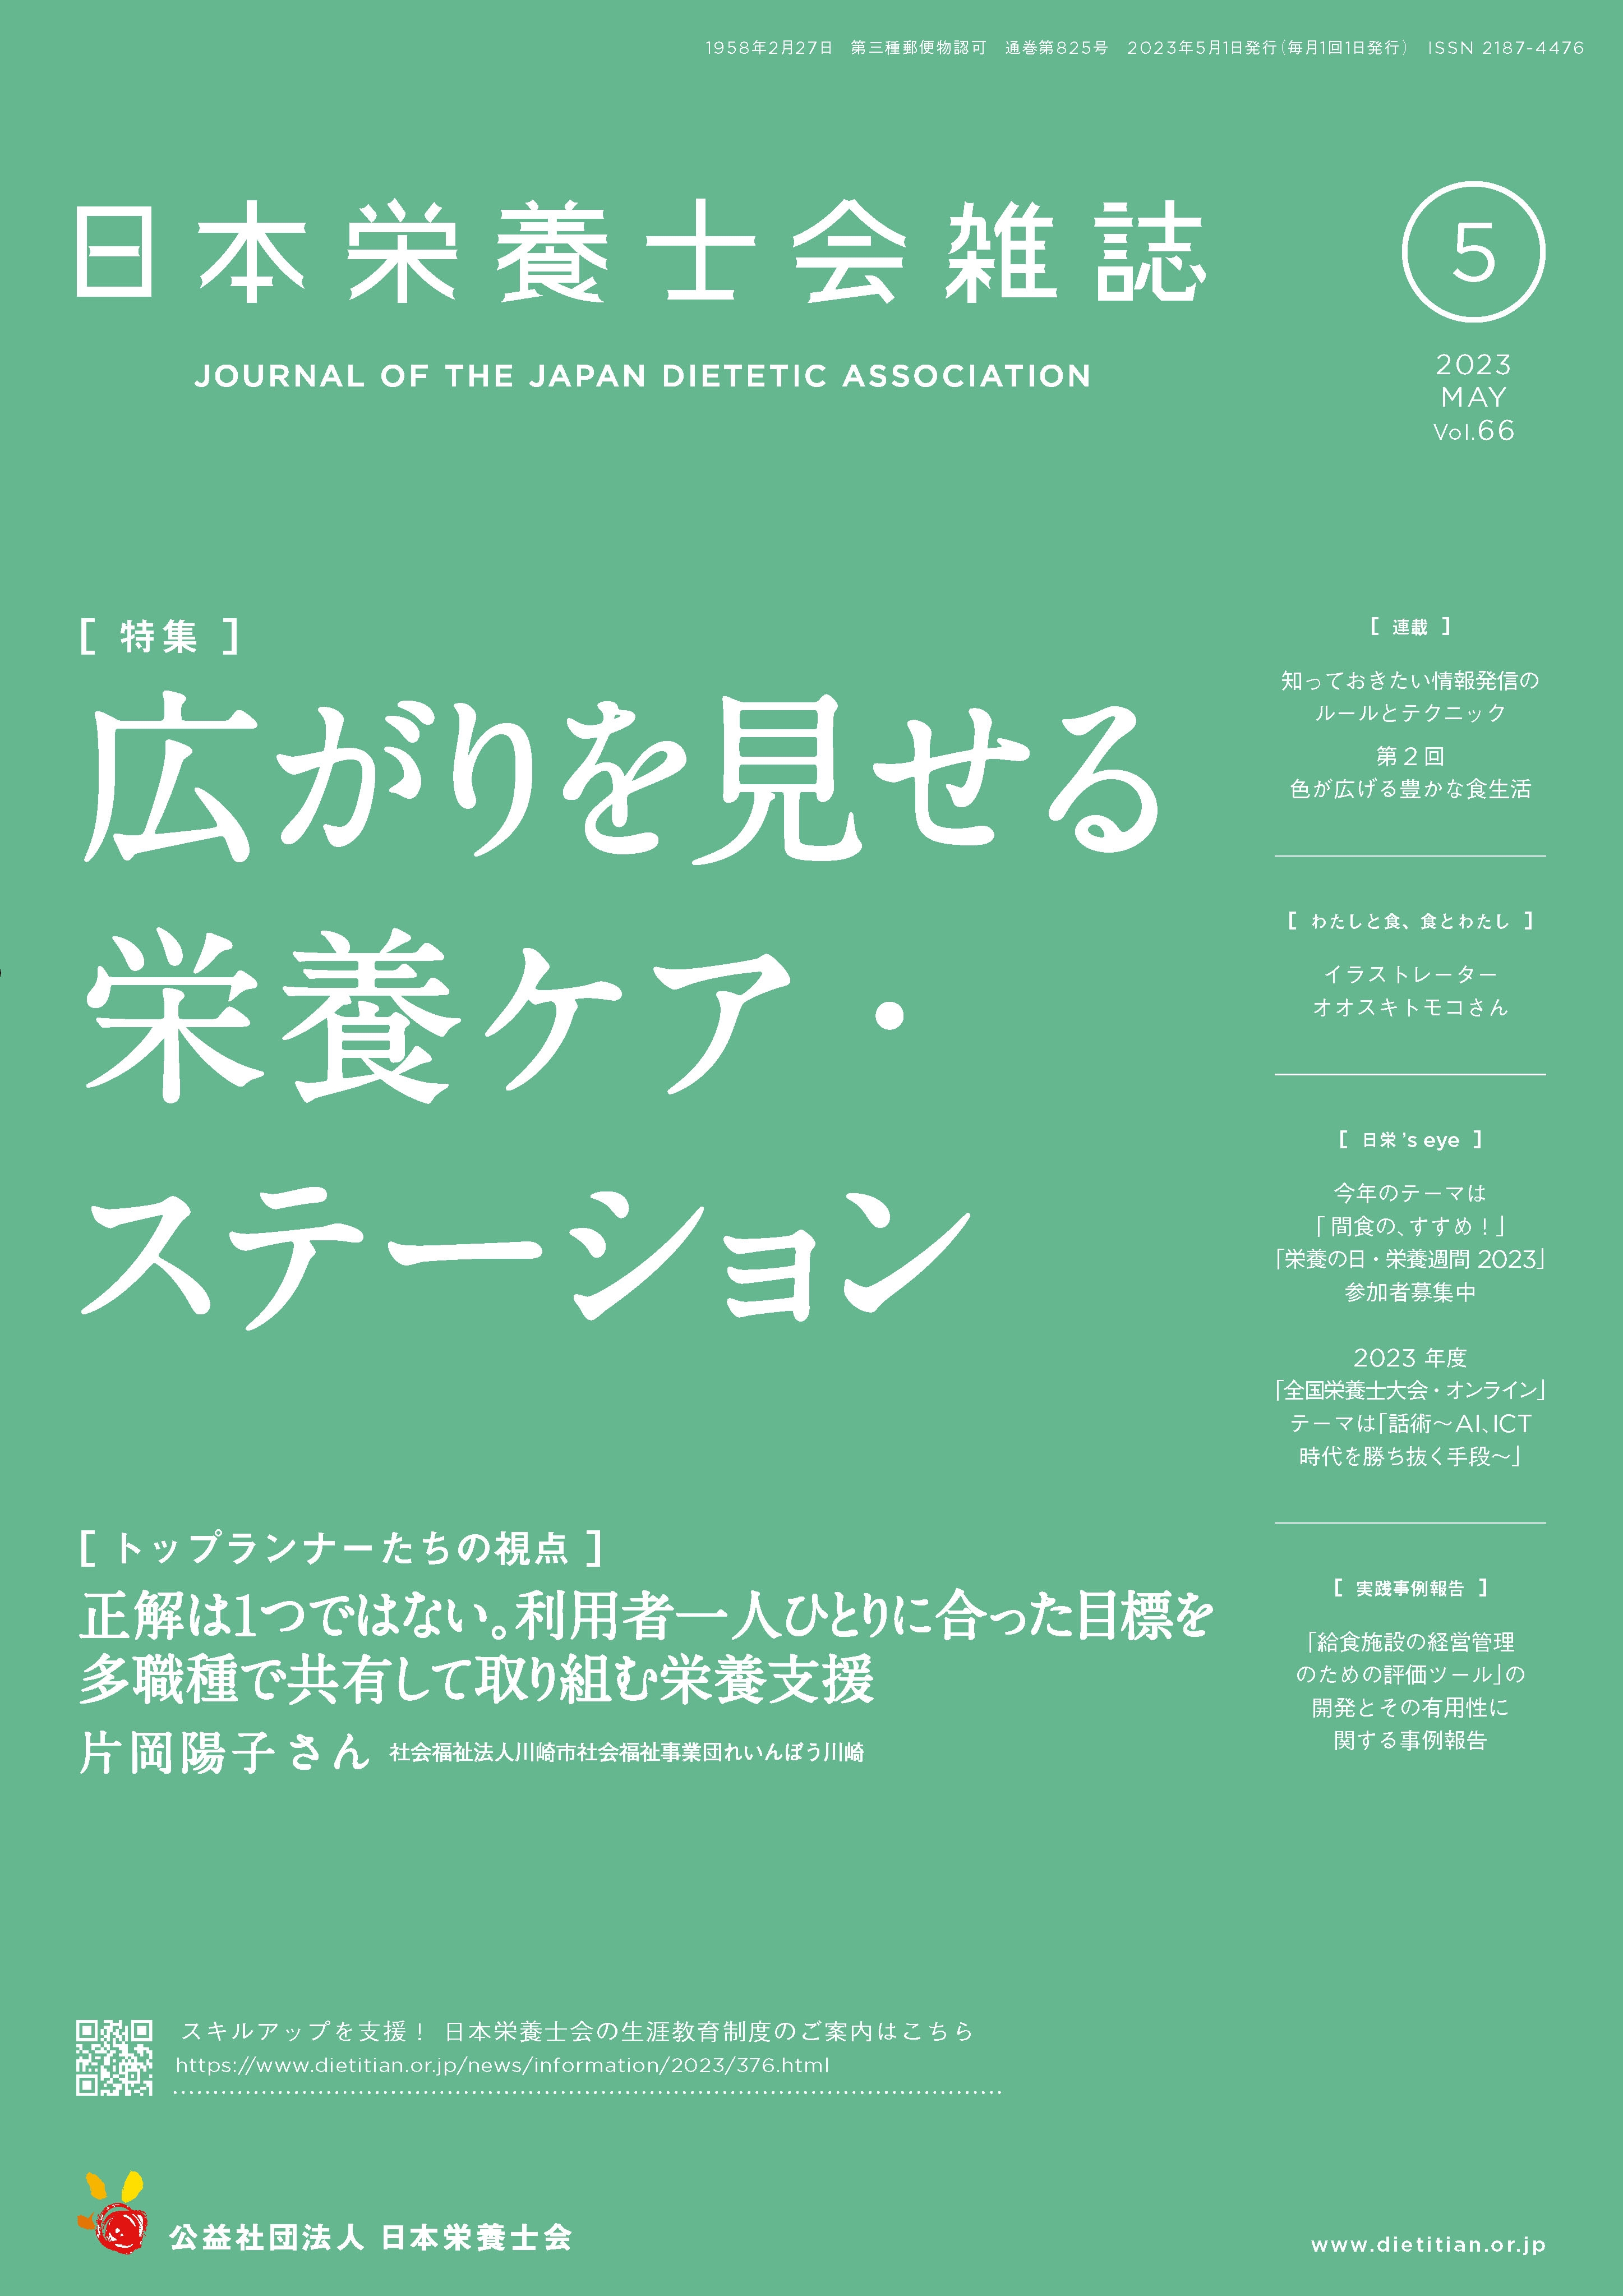 日本栄養士会雑誌 | 出版物・資料 | 公益社団法人 日本栄養士会